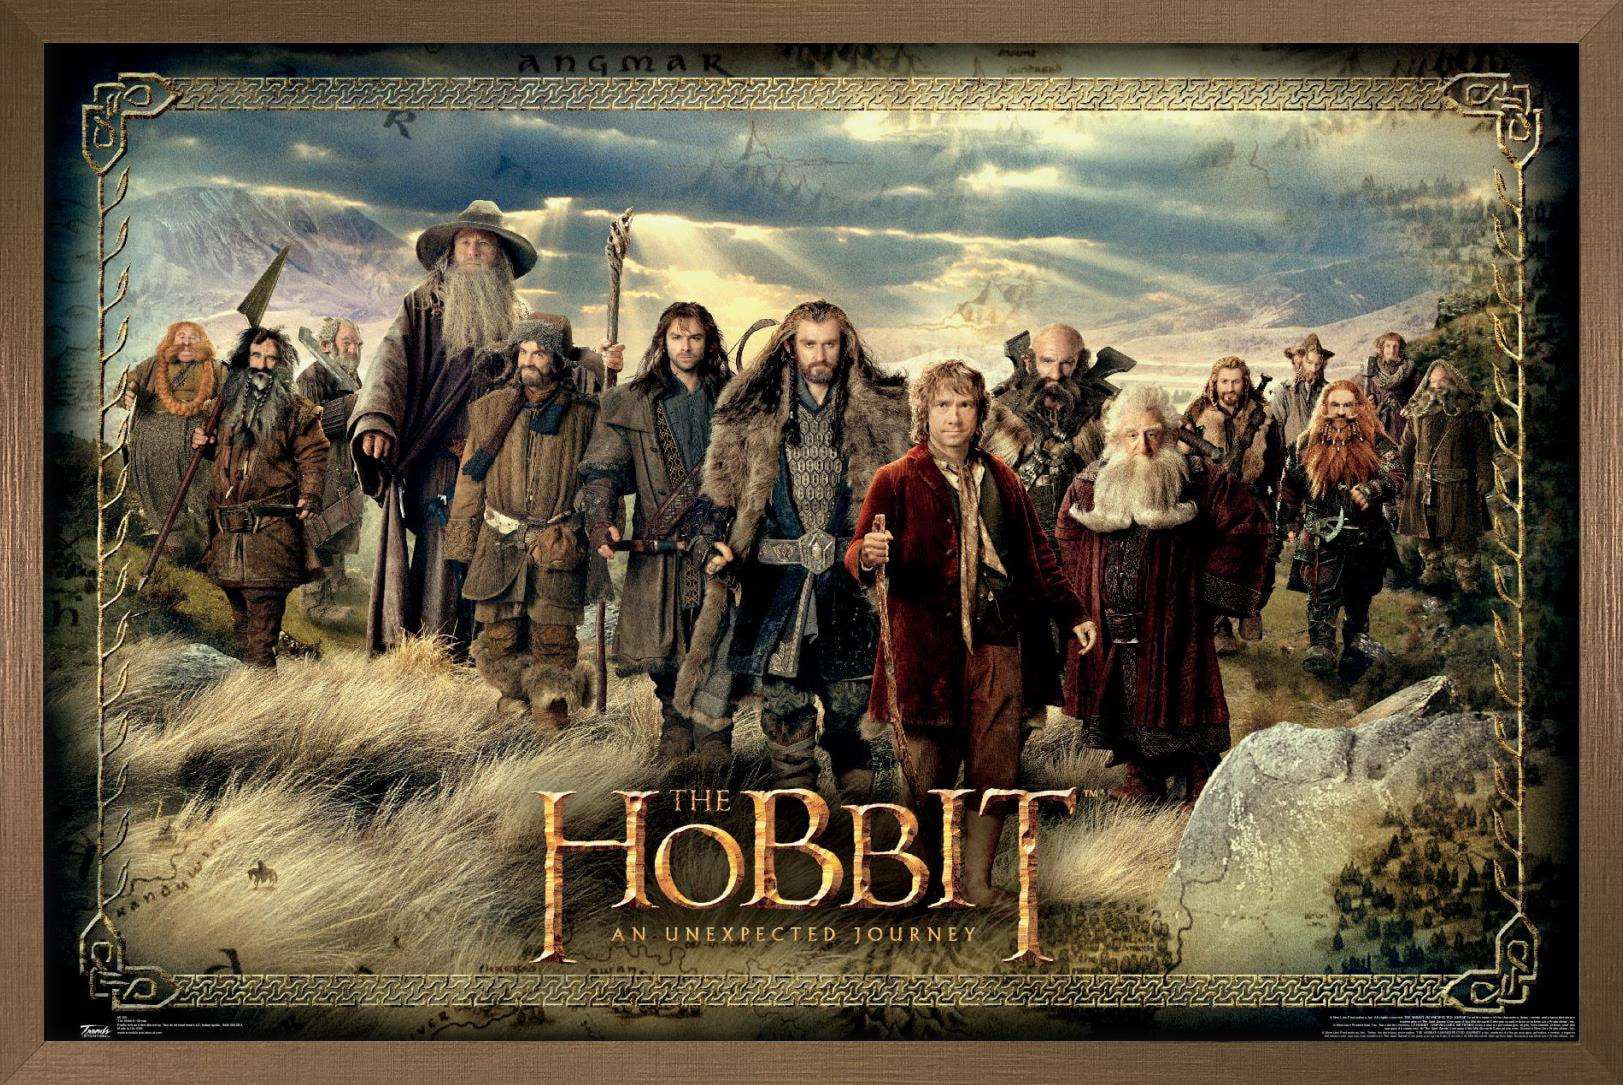 Trends International The Hobbit: An Unexpected Journey - Gollum Wall  Poster, 22.375 x 34, Premium Unframed Version